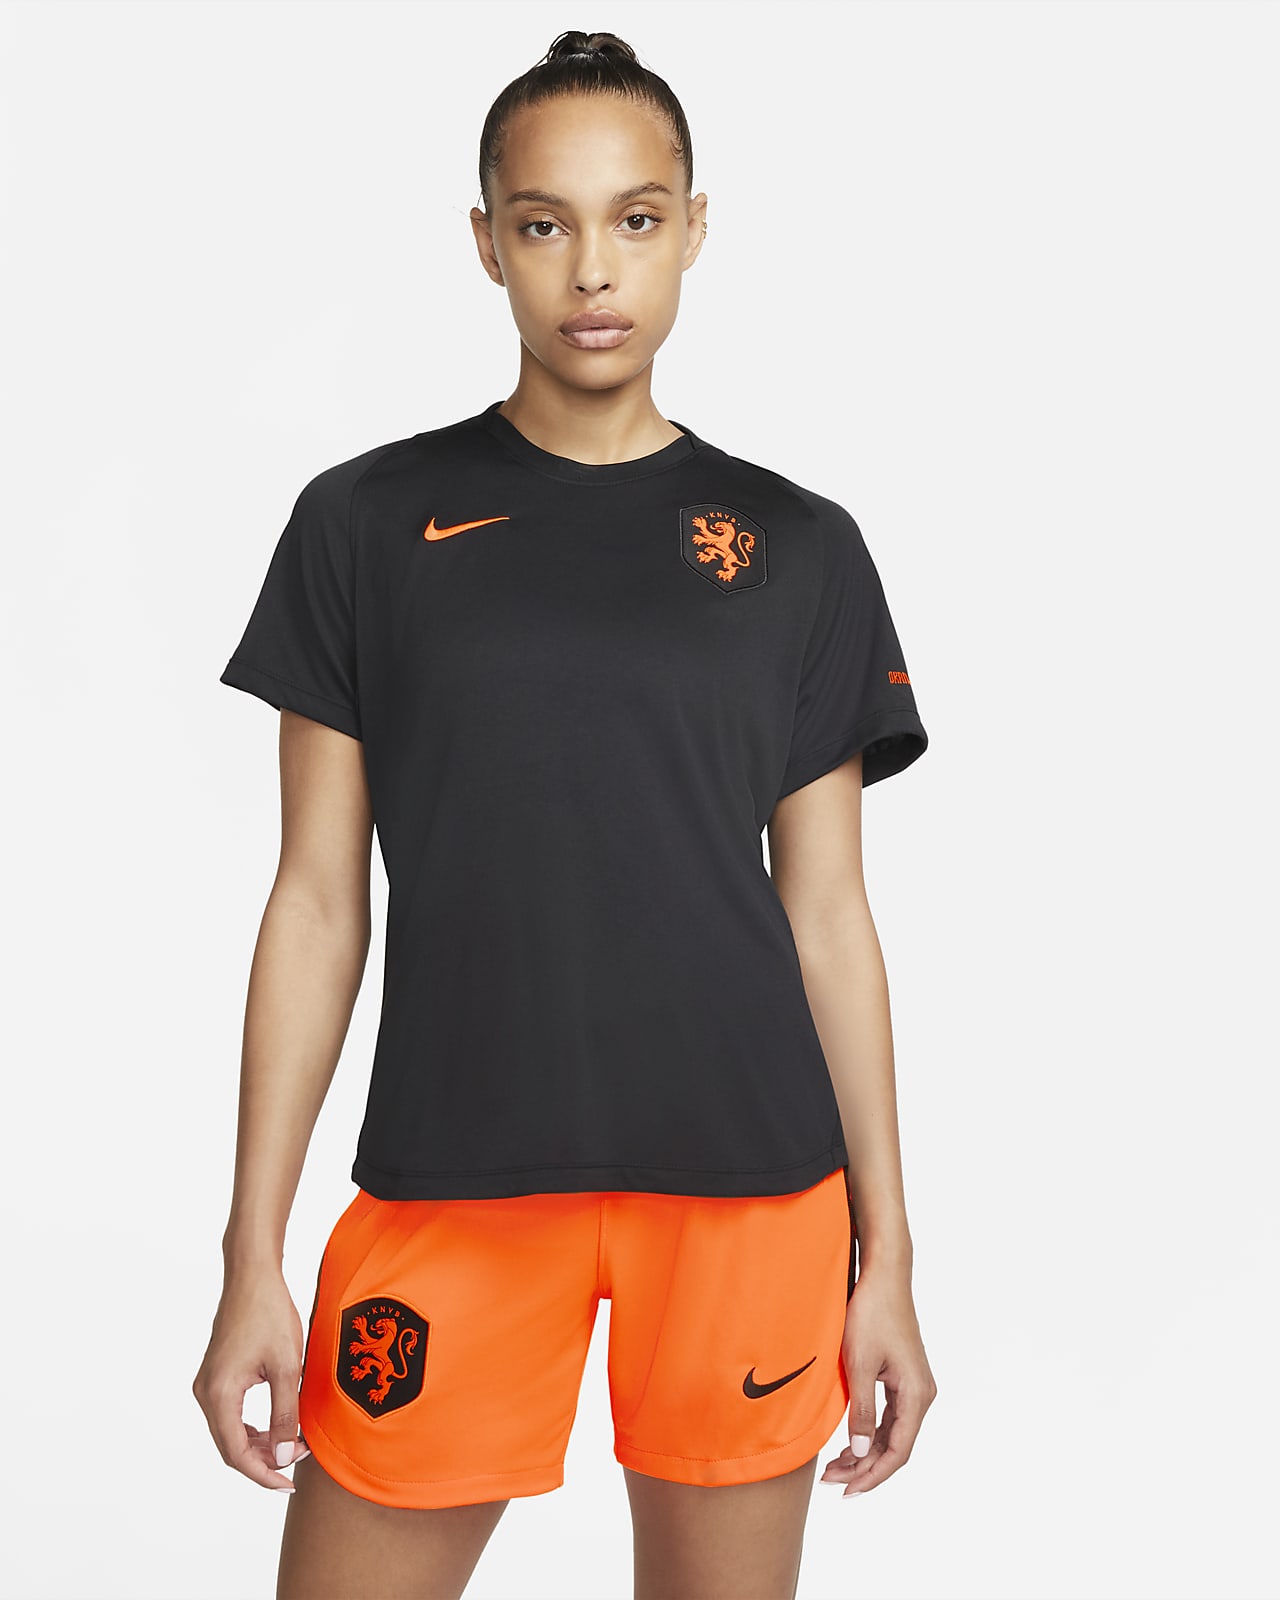 Países Bajos de fútbol de manga corta Nike - Mujer. ES